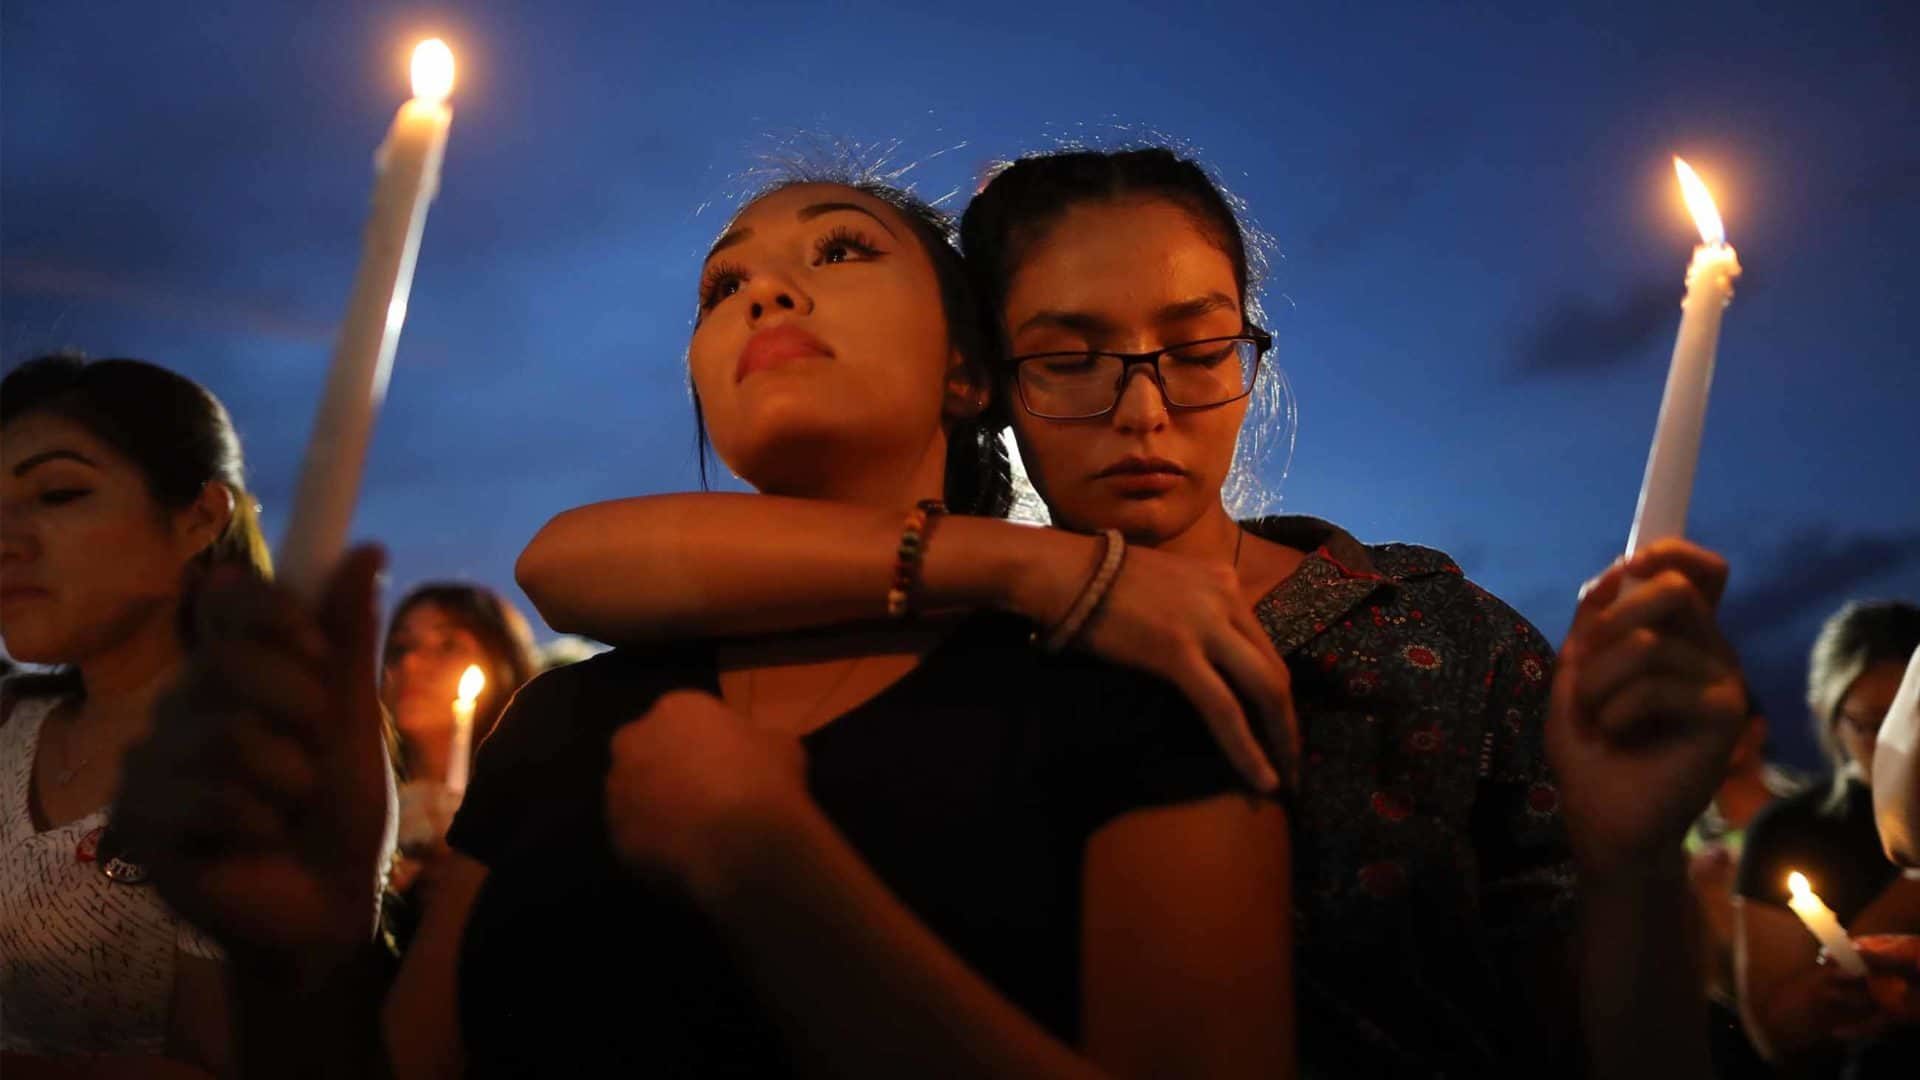 El Paso shooting vigil